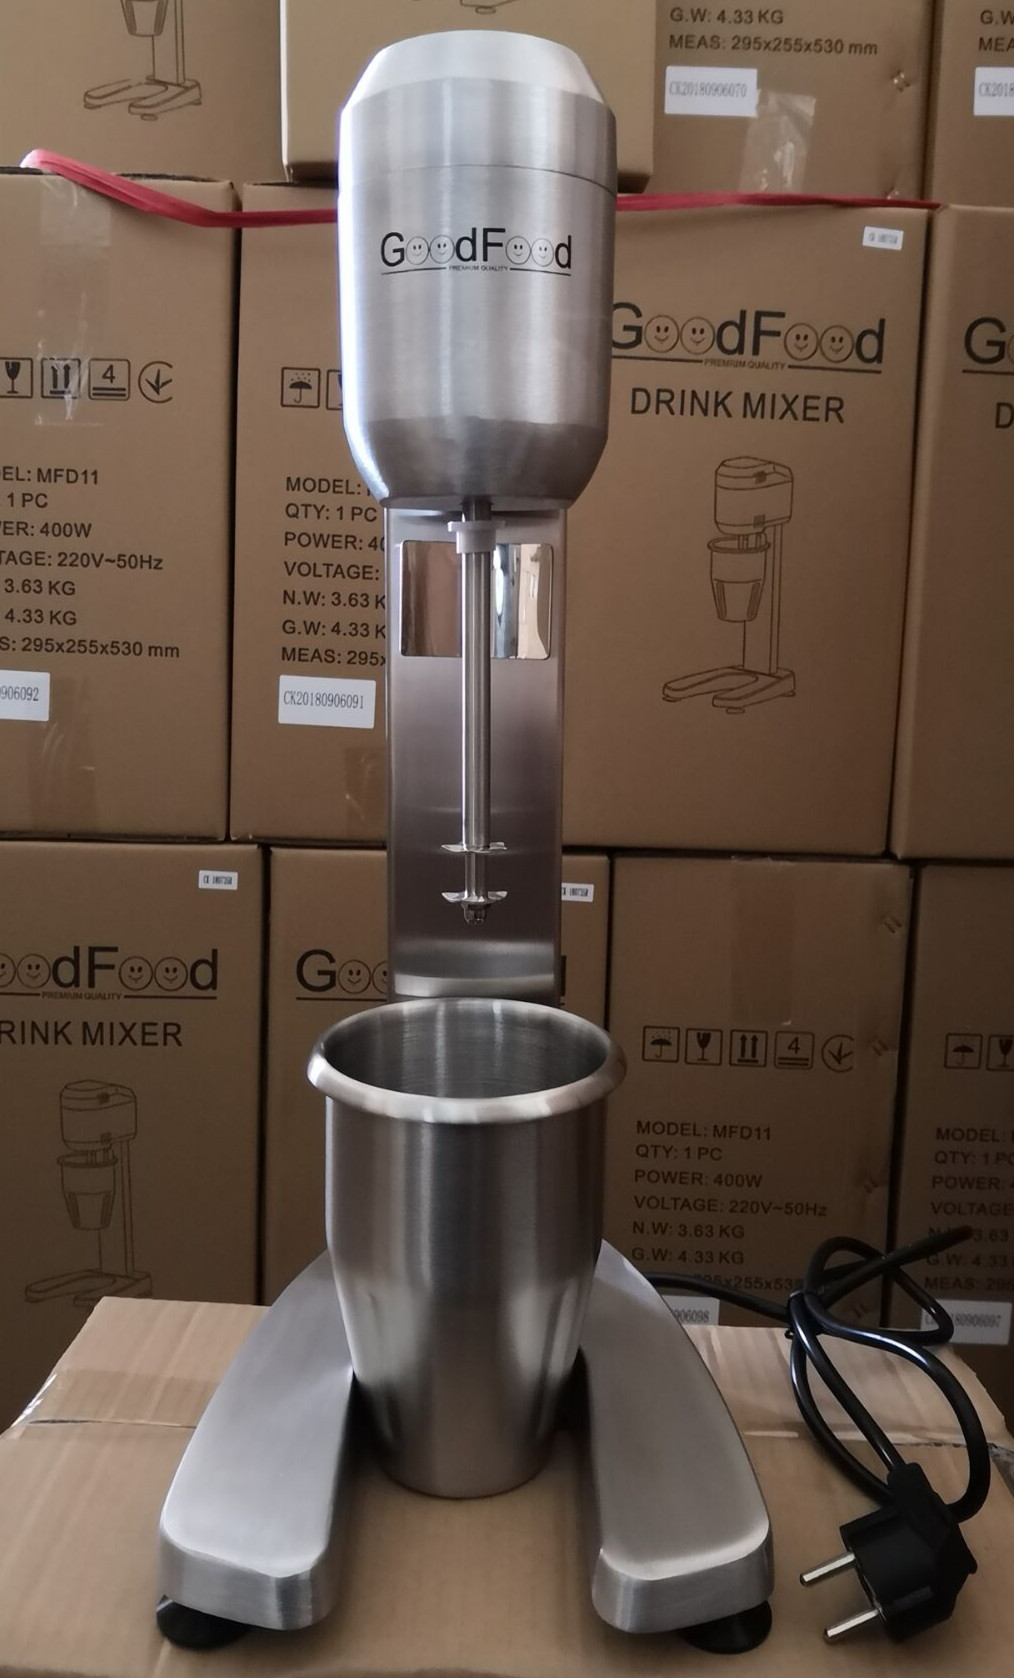 Міксер для молочних коктейлів Goodfood MFD11 - алюмінієві корпус і стакан з нержавіючої сталі